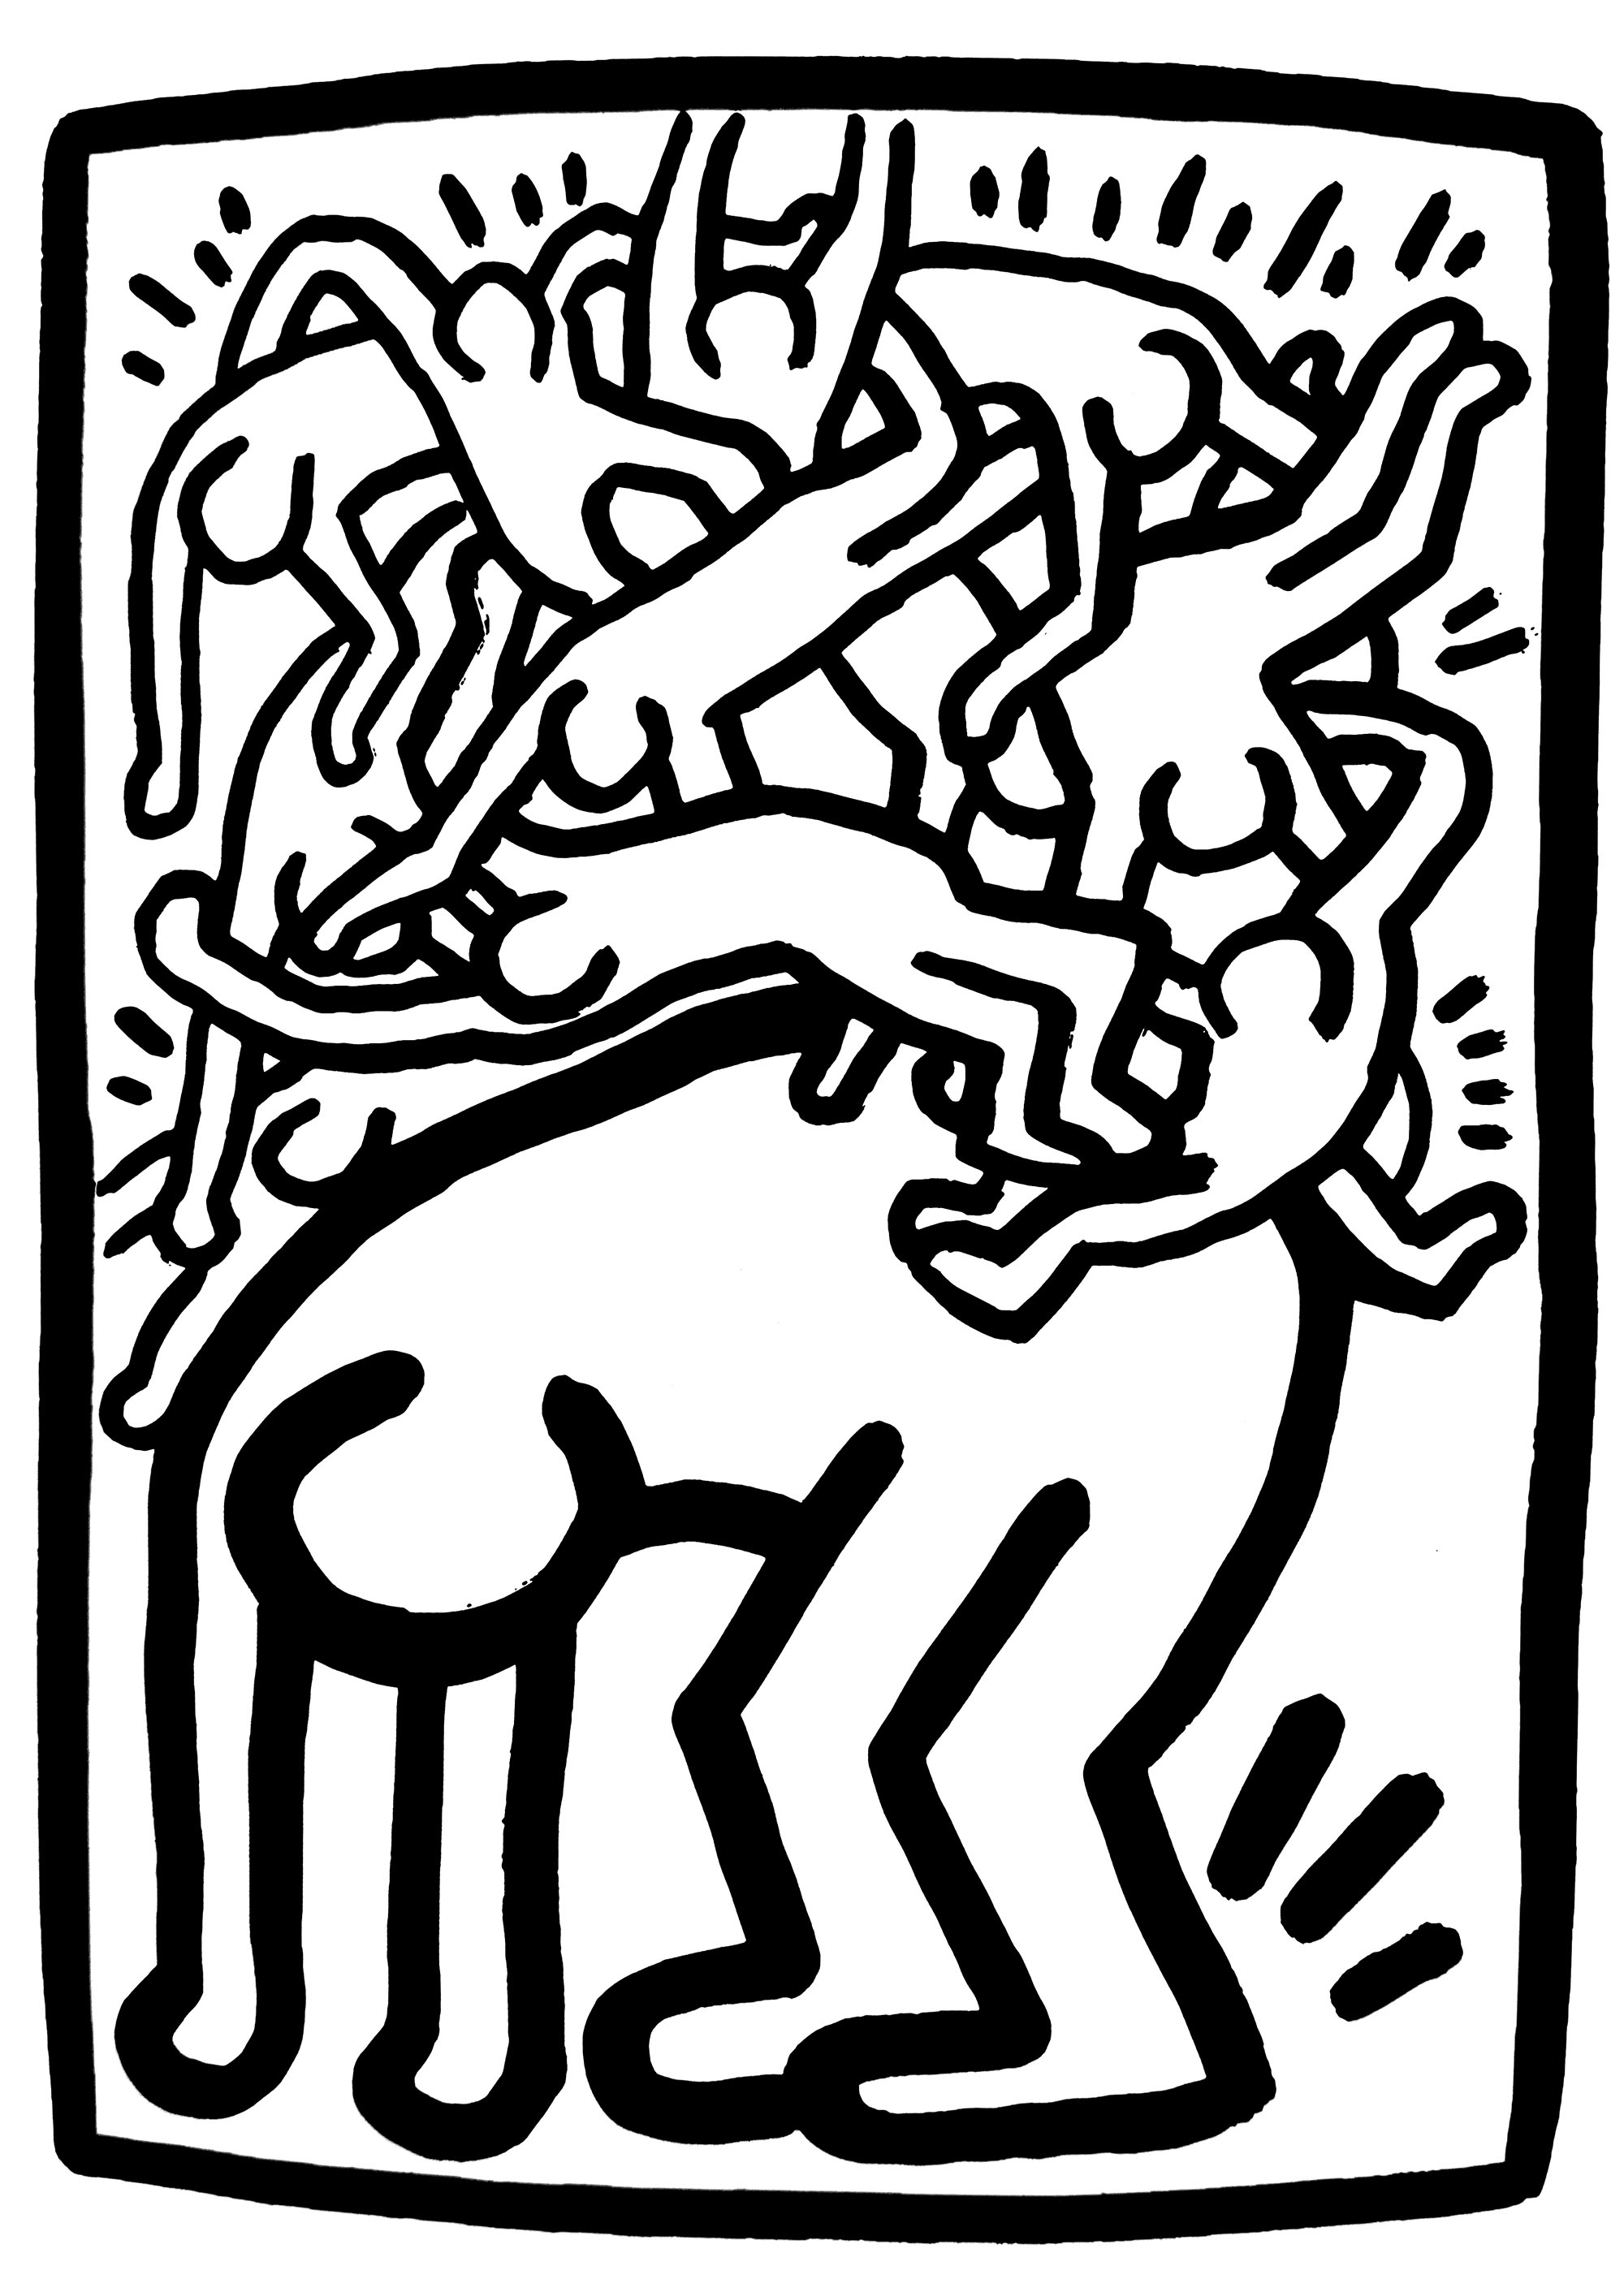 Keith Haring mehrfache Persönlichkeiten. Auf dem Rücken einer großen Figur mischen sich eine Vielzahl kleiner Figuren, die mit unbändiger Energie tanzen und springen.